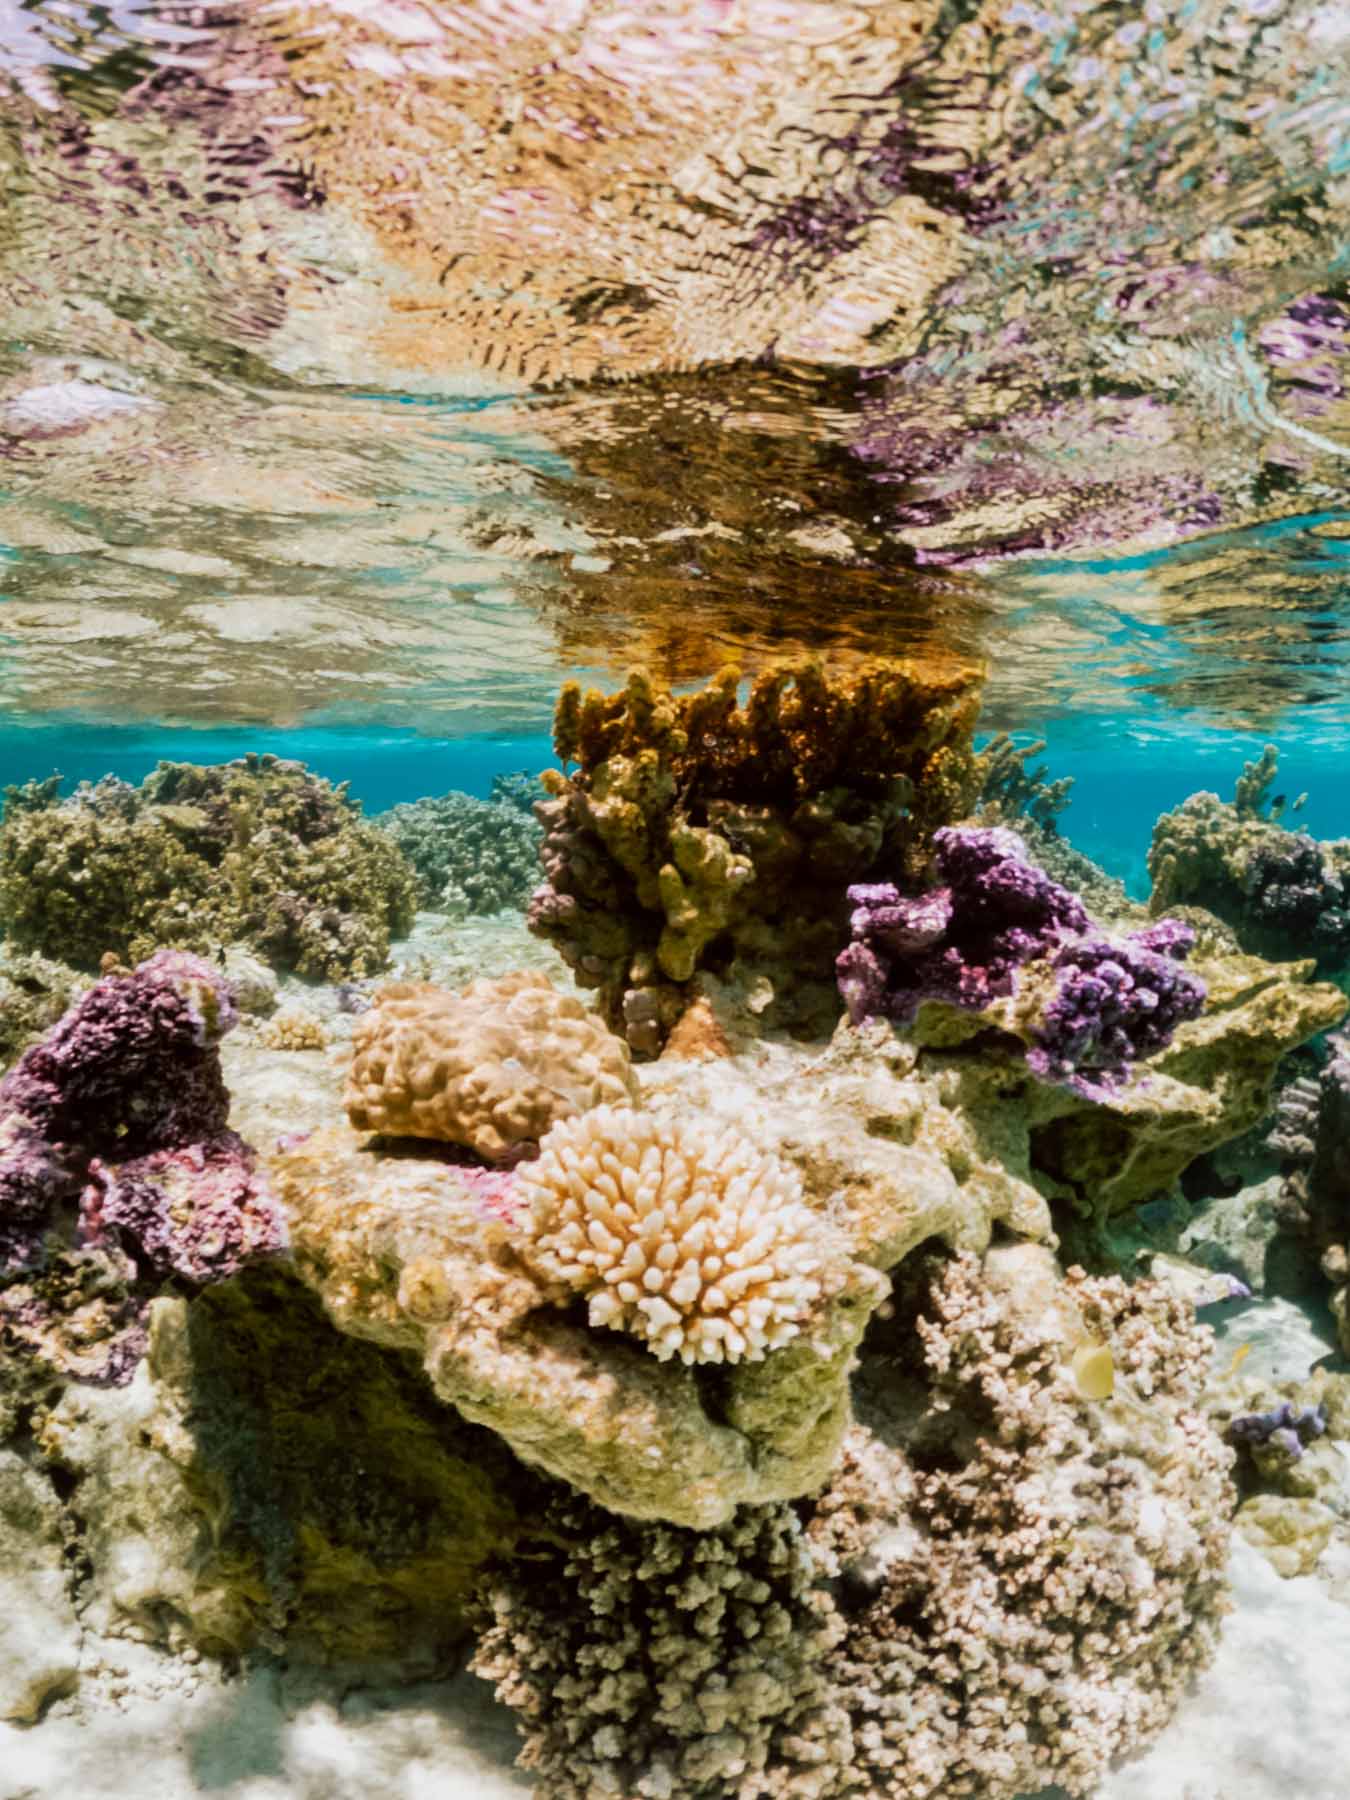 Coral garden in Bora Bora